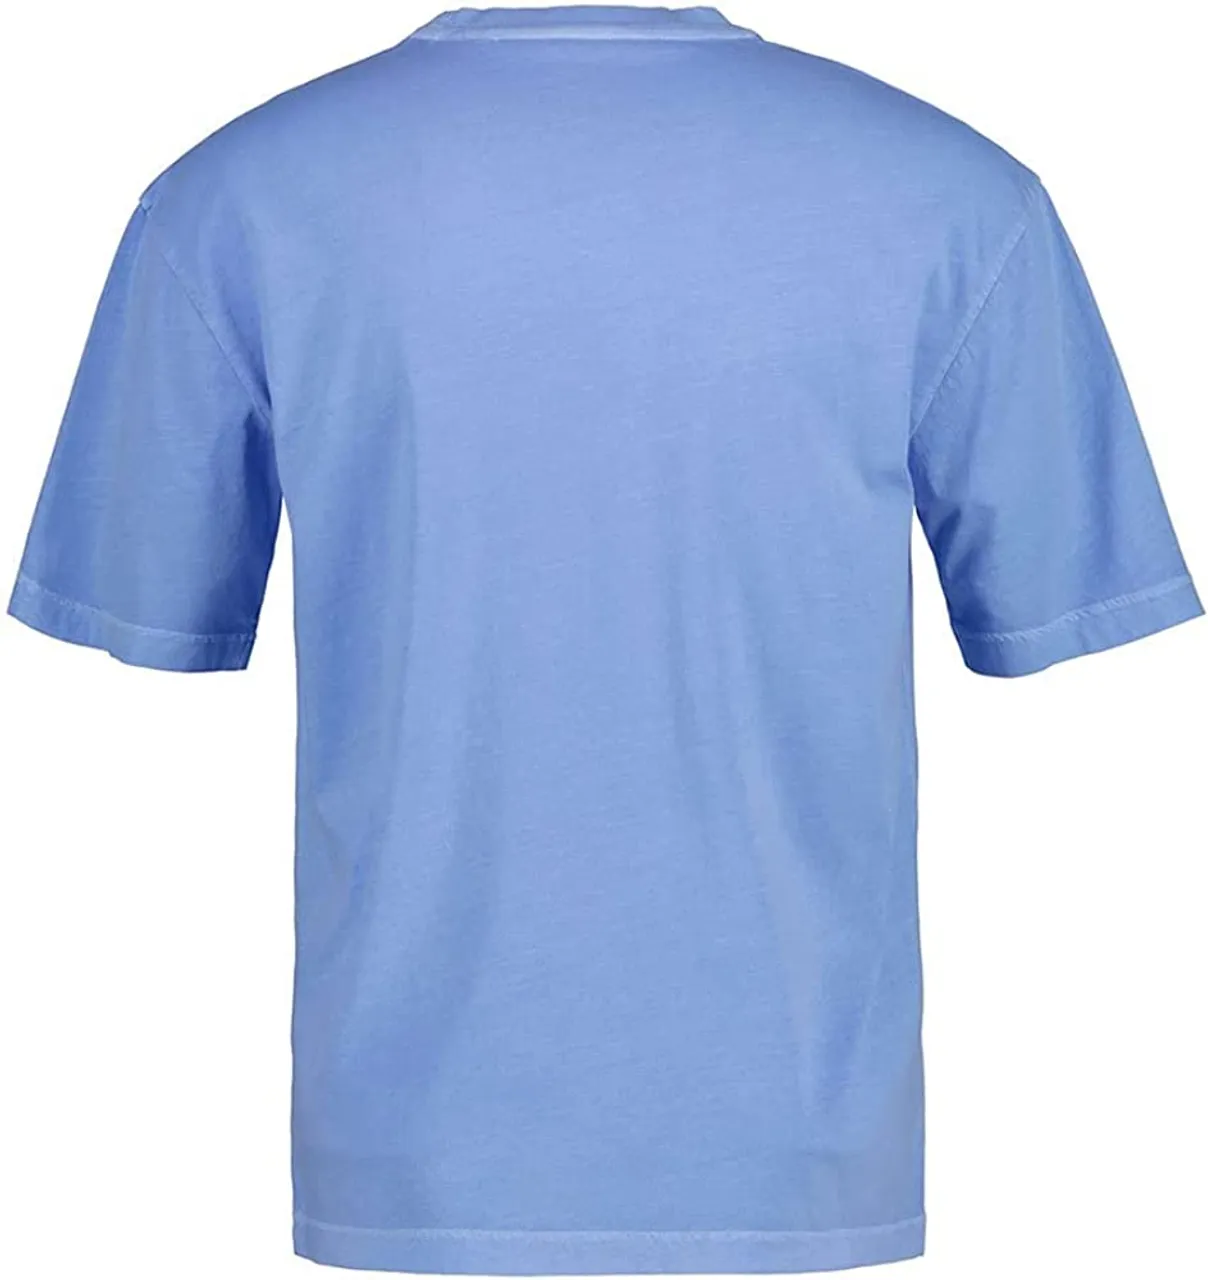 Rundhals T-Shirt SUNFADED GANT USA T-SHIRT, GENTLE BLUE